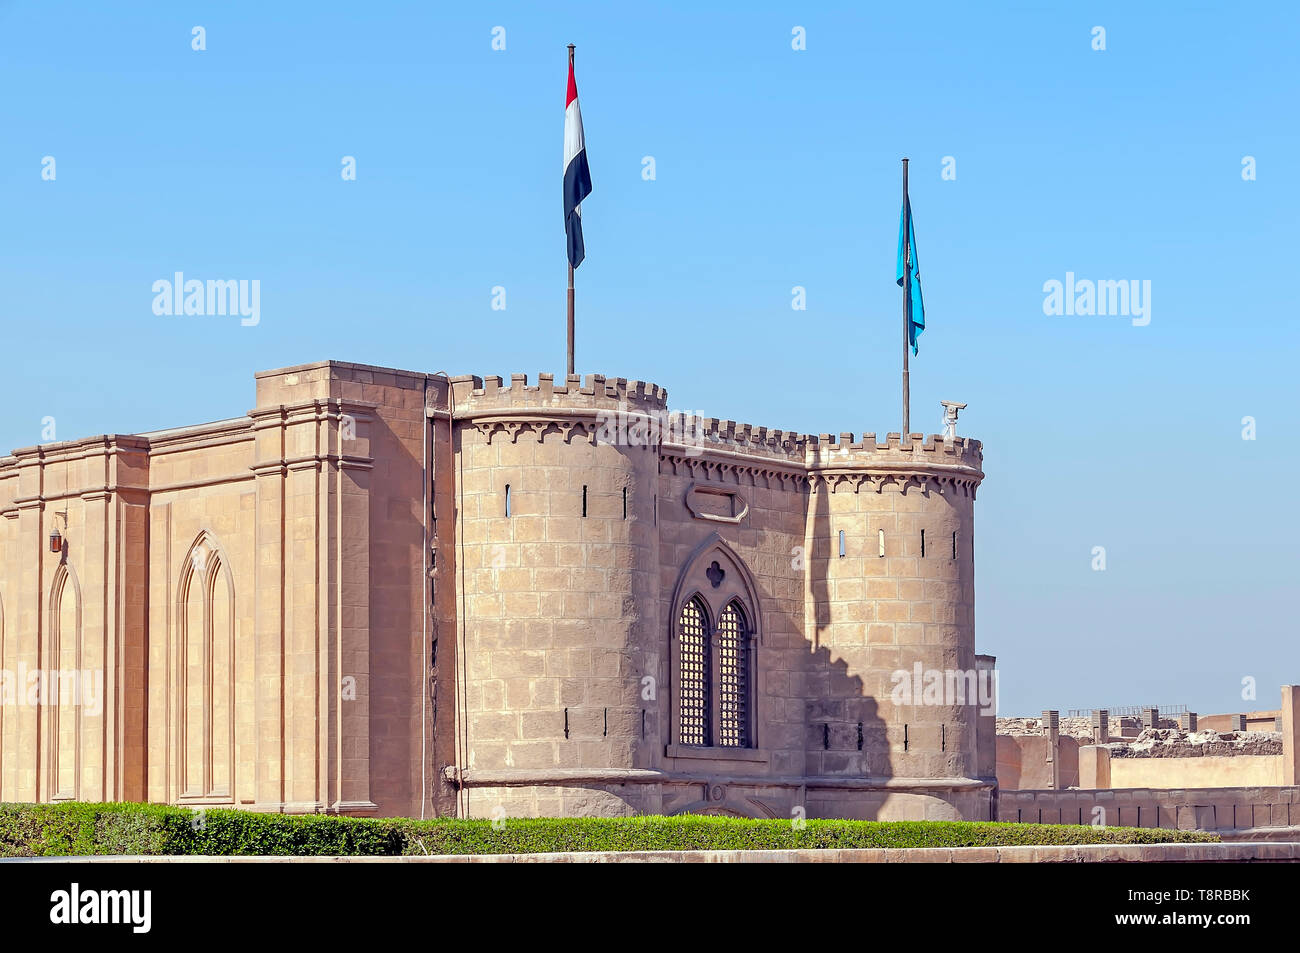 Mauern und Türme der Zitadelle von Salah El Din oder Saladin Zitadelle in Kairo Ägypten Stockfoto